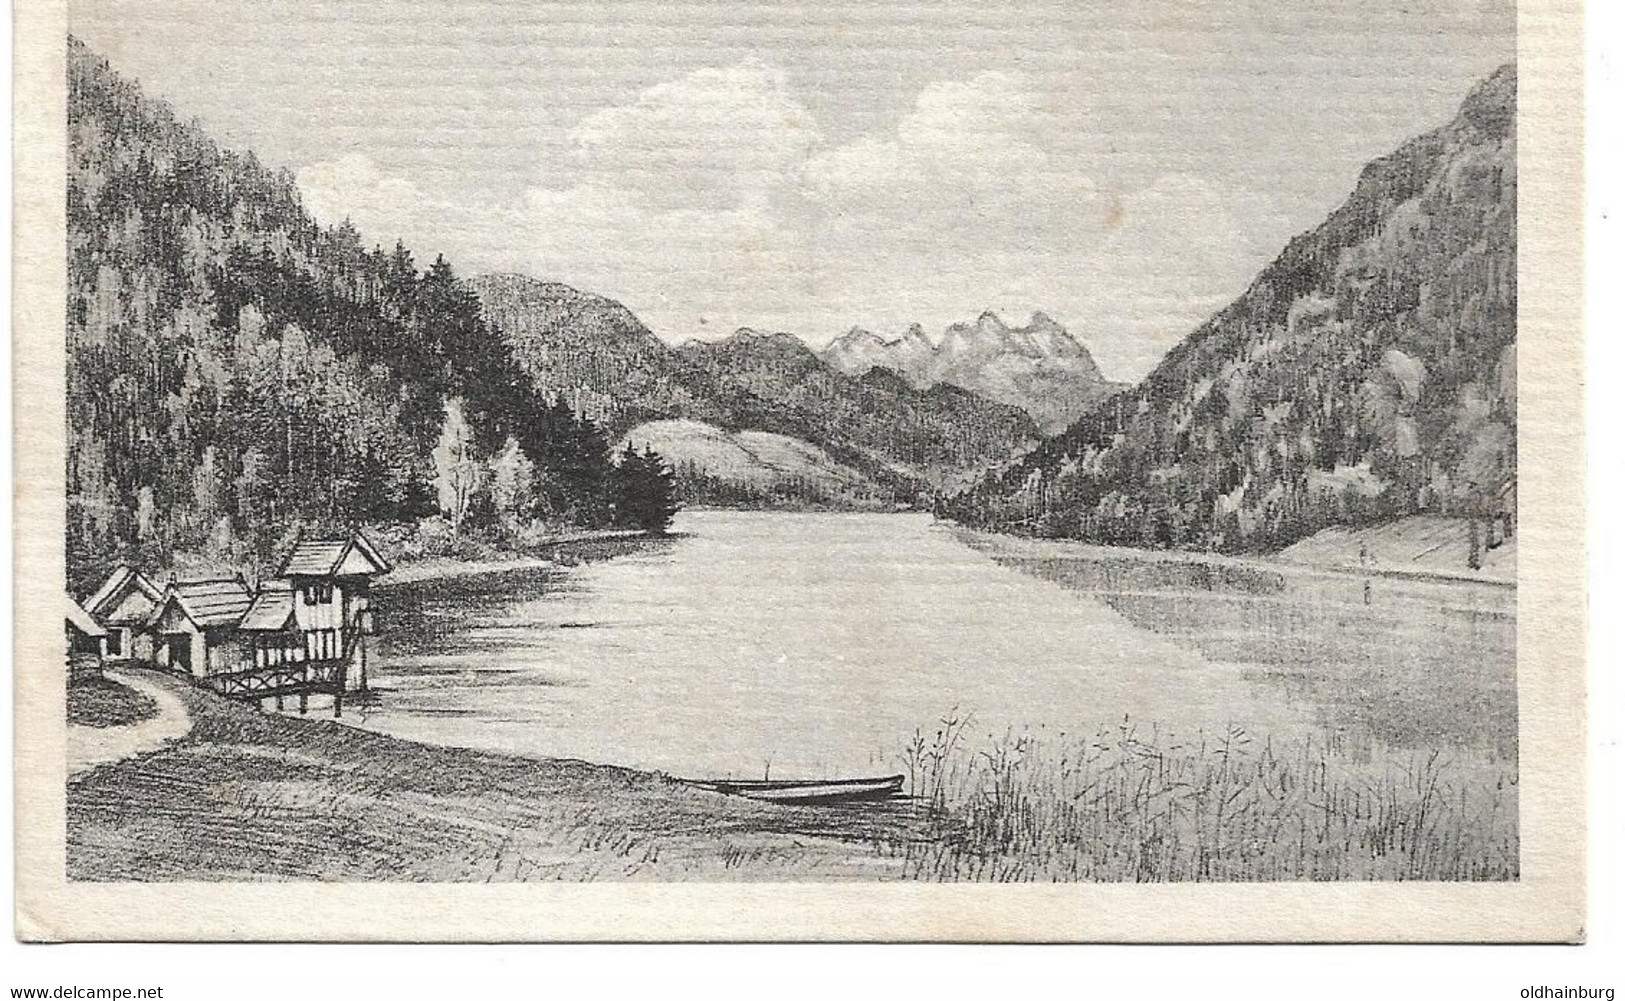 1948j: AK Weissensee, Badeanstalt Und Bootshütte Des Gasthofes... 10.5.1921 Gelaufen - Weissensee